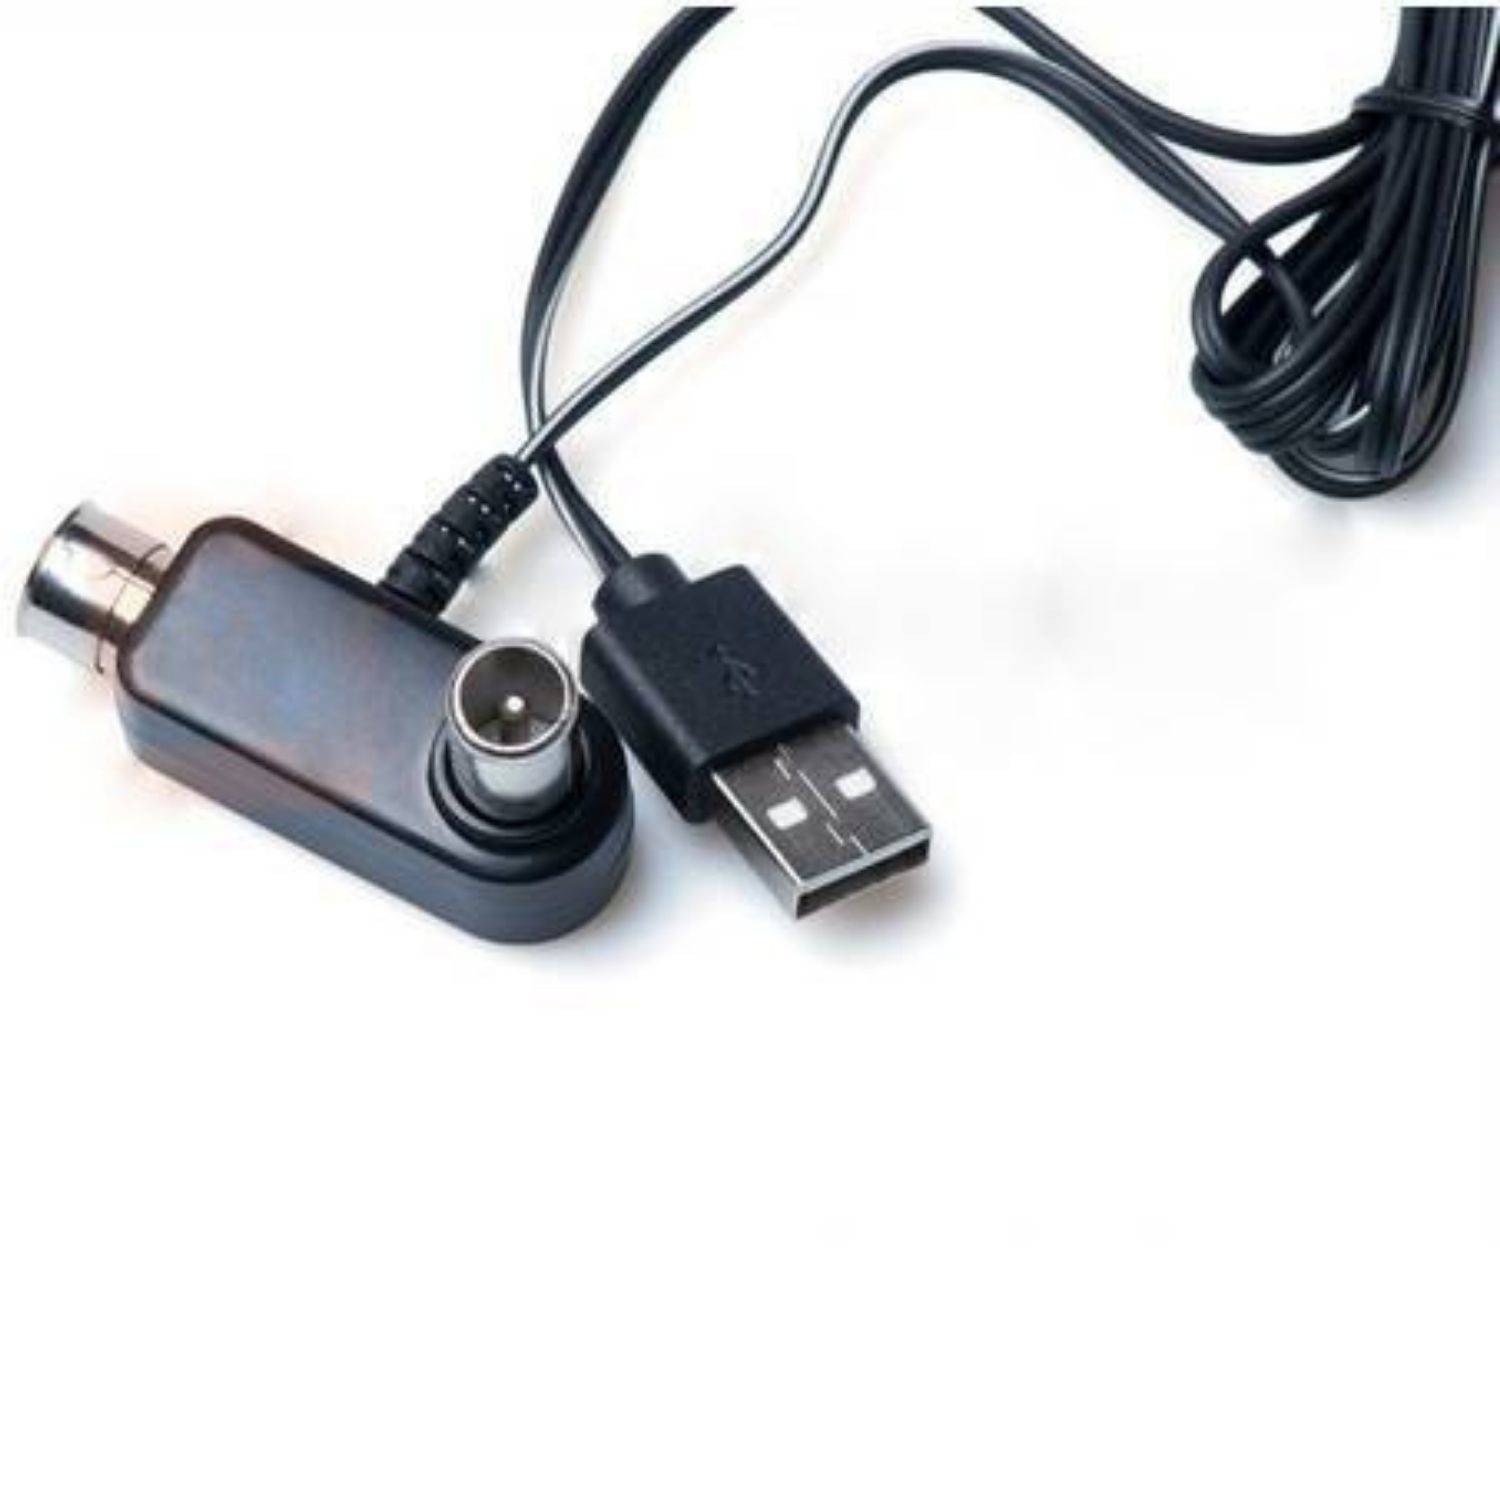 Антенна 5 вольт. Инжектор питания USB-5v. Инжектор питания для антенны 5v USB Locus. Инжектор для антенны 5 вольт. Инжектор питания USB Дельта.